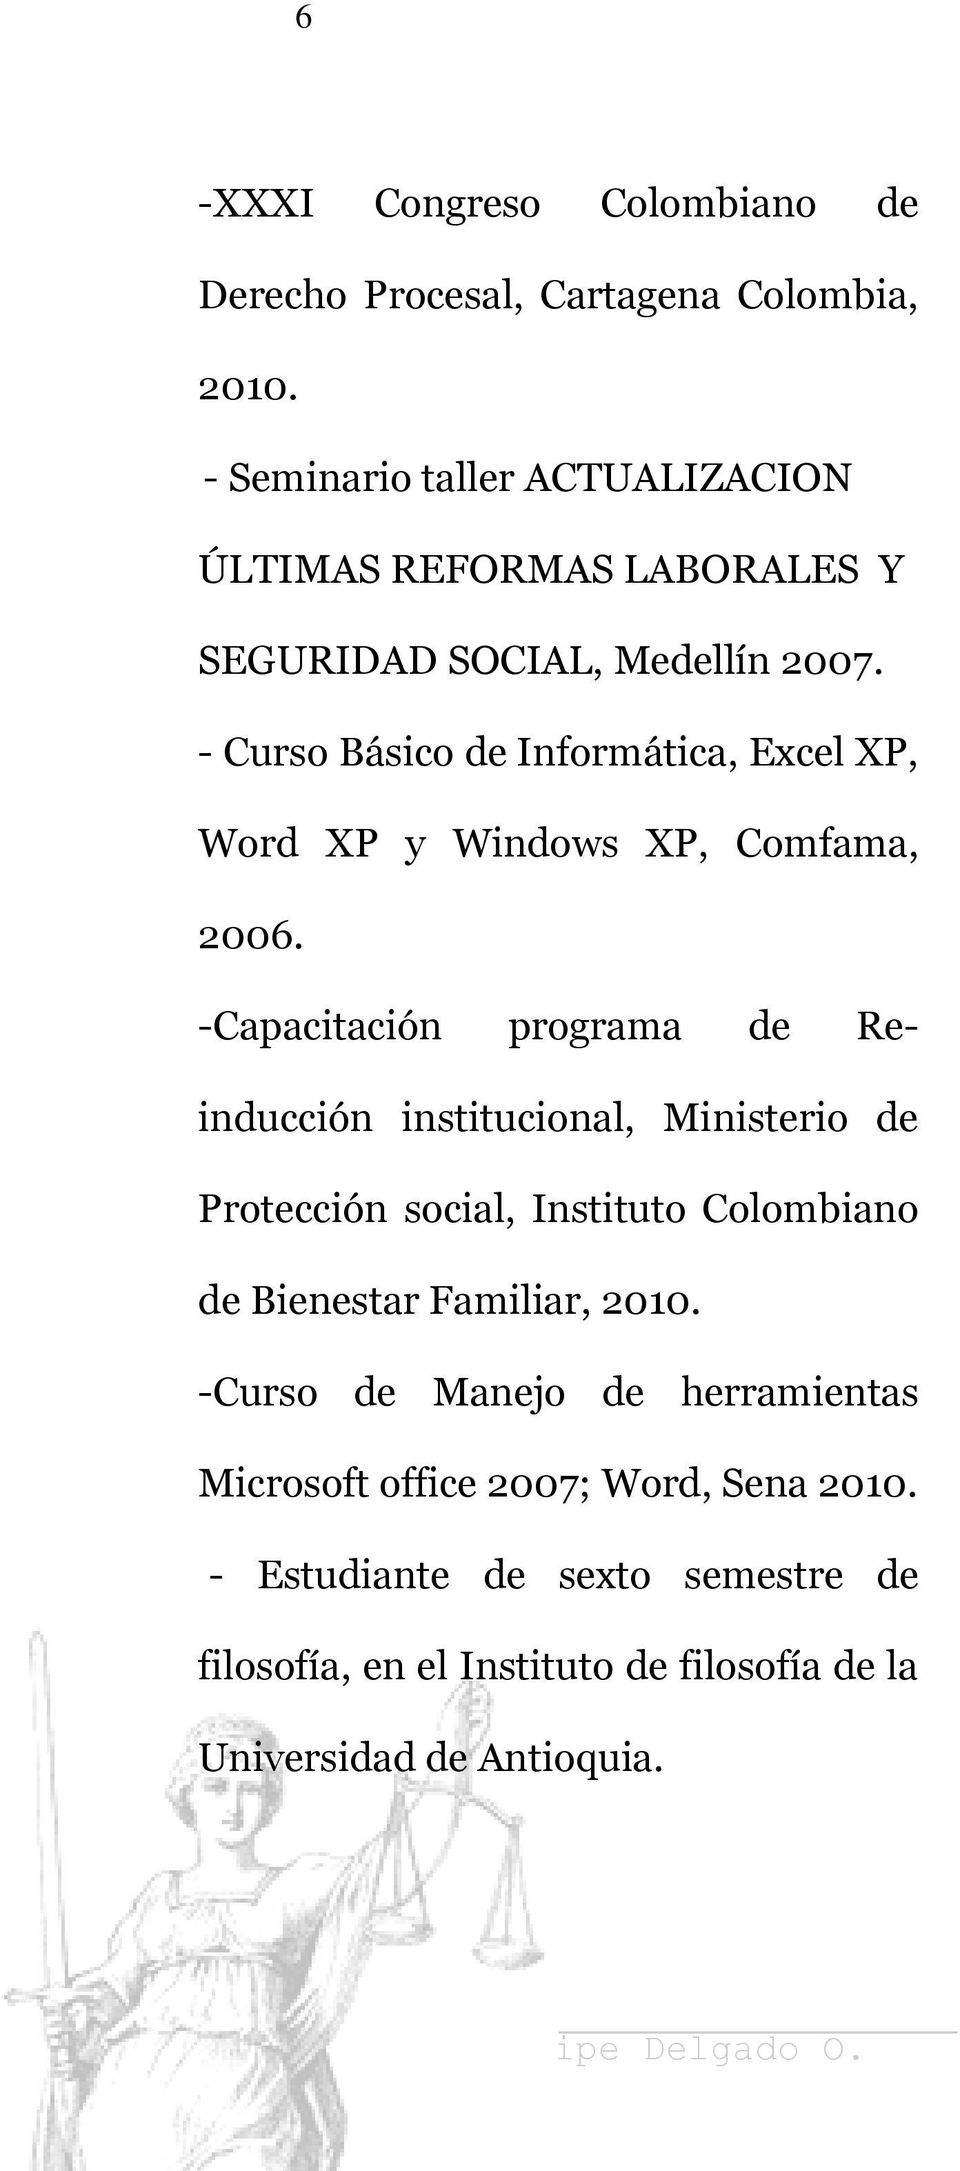 - Curso Básico de Informática, Excel XP, Word XP y Windows XP, Comfama, 2006.